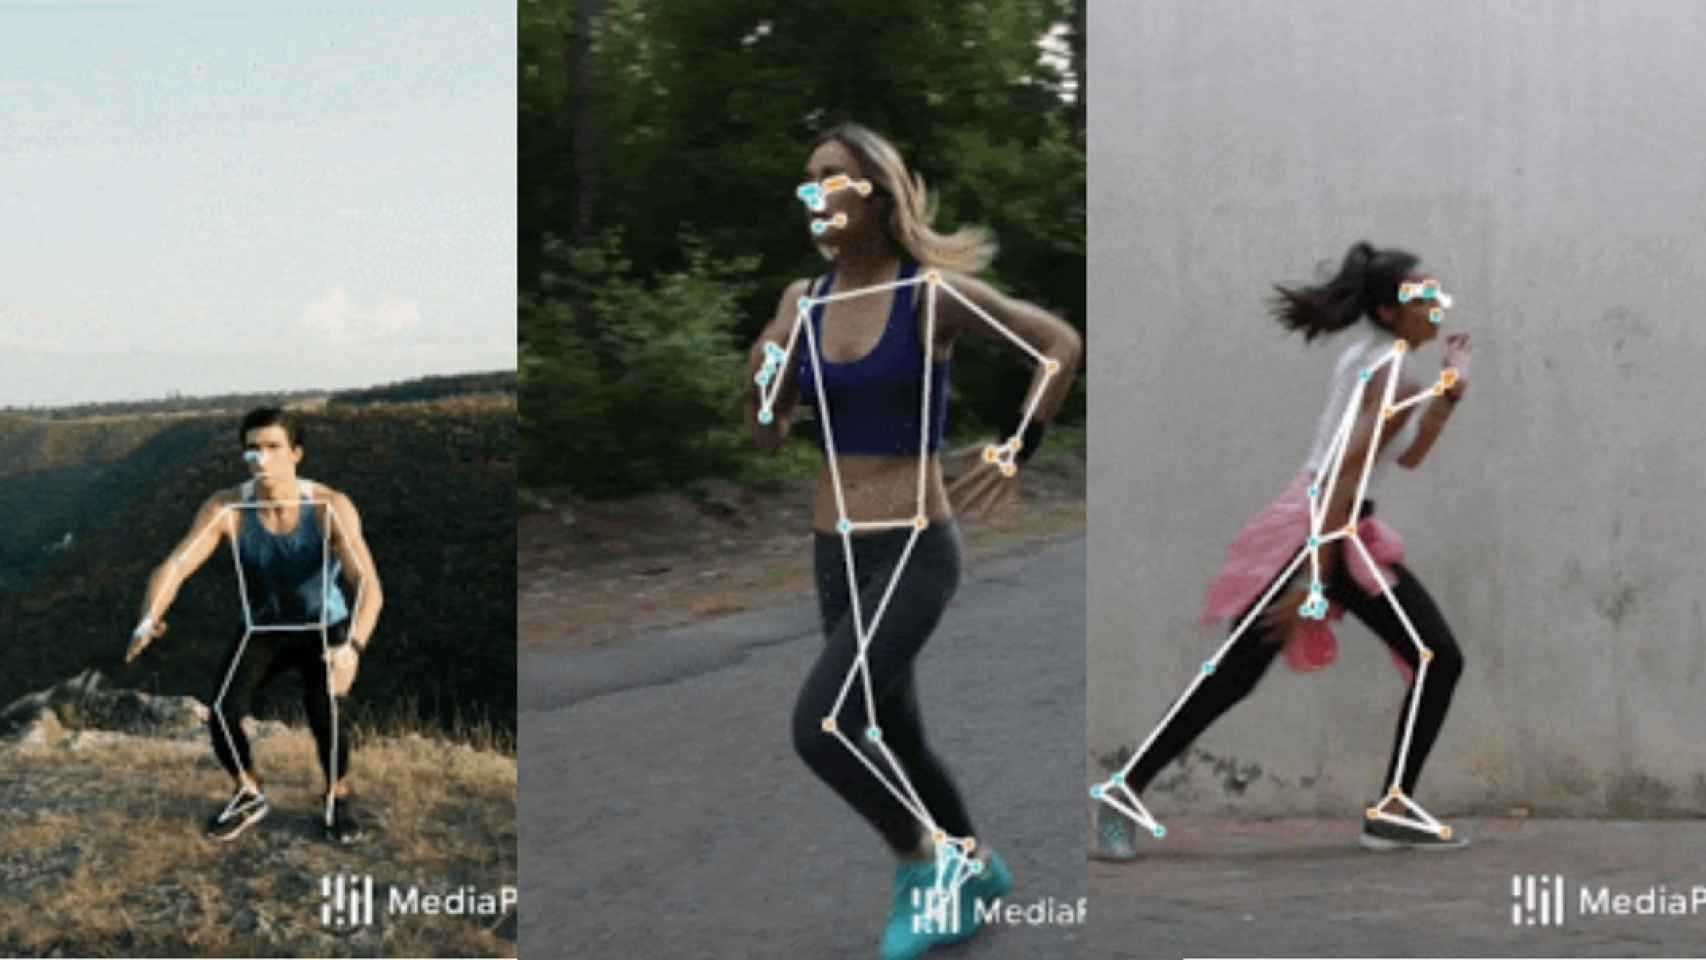 Google cambiará las apps deportivas: crean una tecnología que reconoce la postura corporal